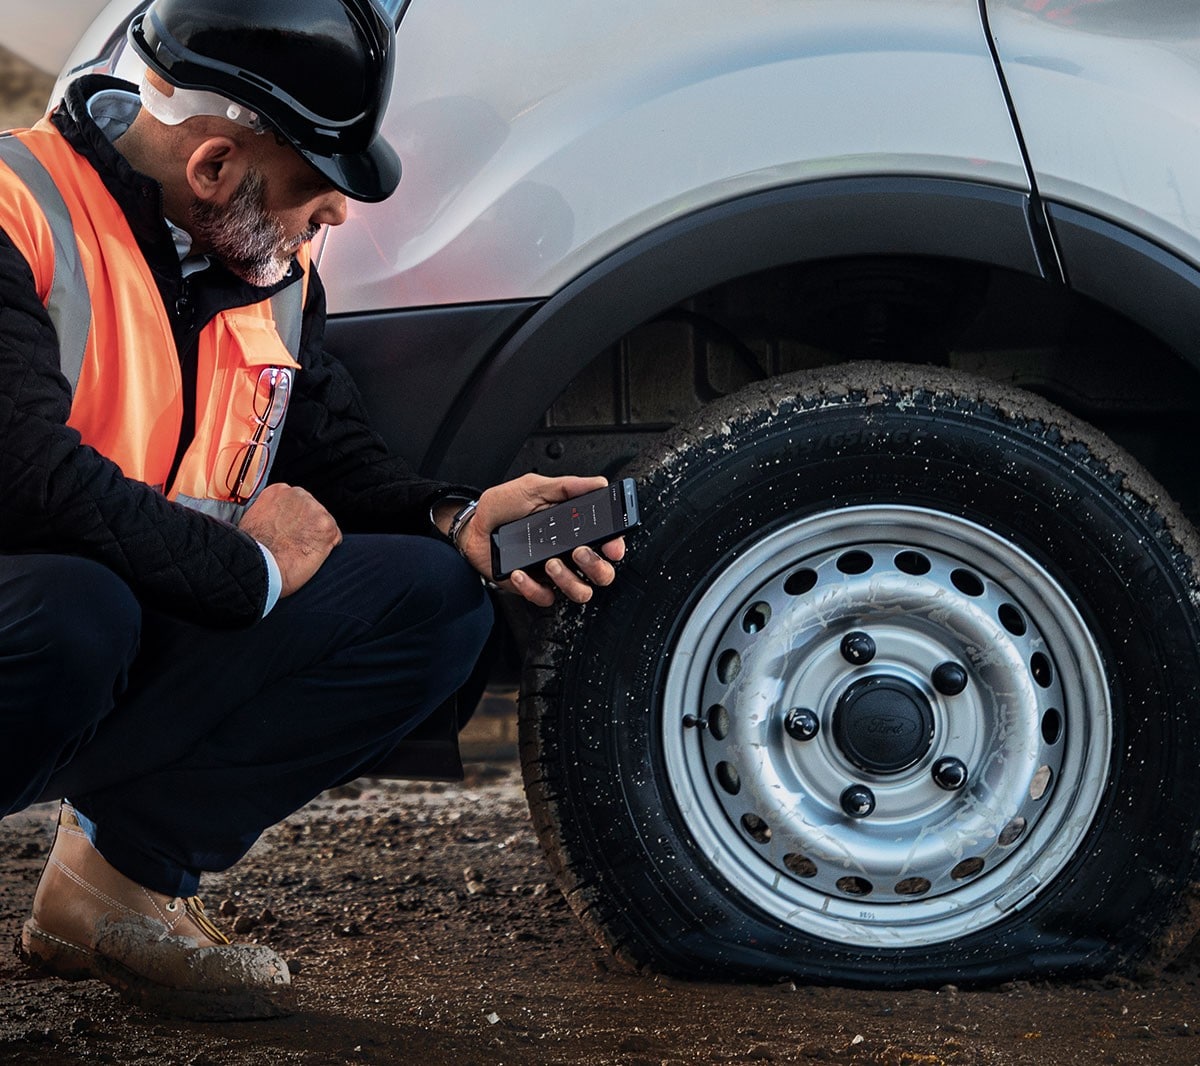 Arbeiter mit Bauhelm und Warnweste kniet neben einem Fahrzeug mit plattem Reifen und hält ein mobiles Telefon in der Hand